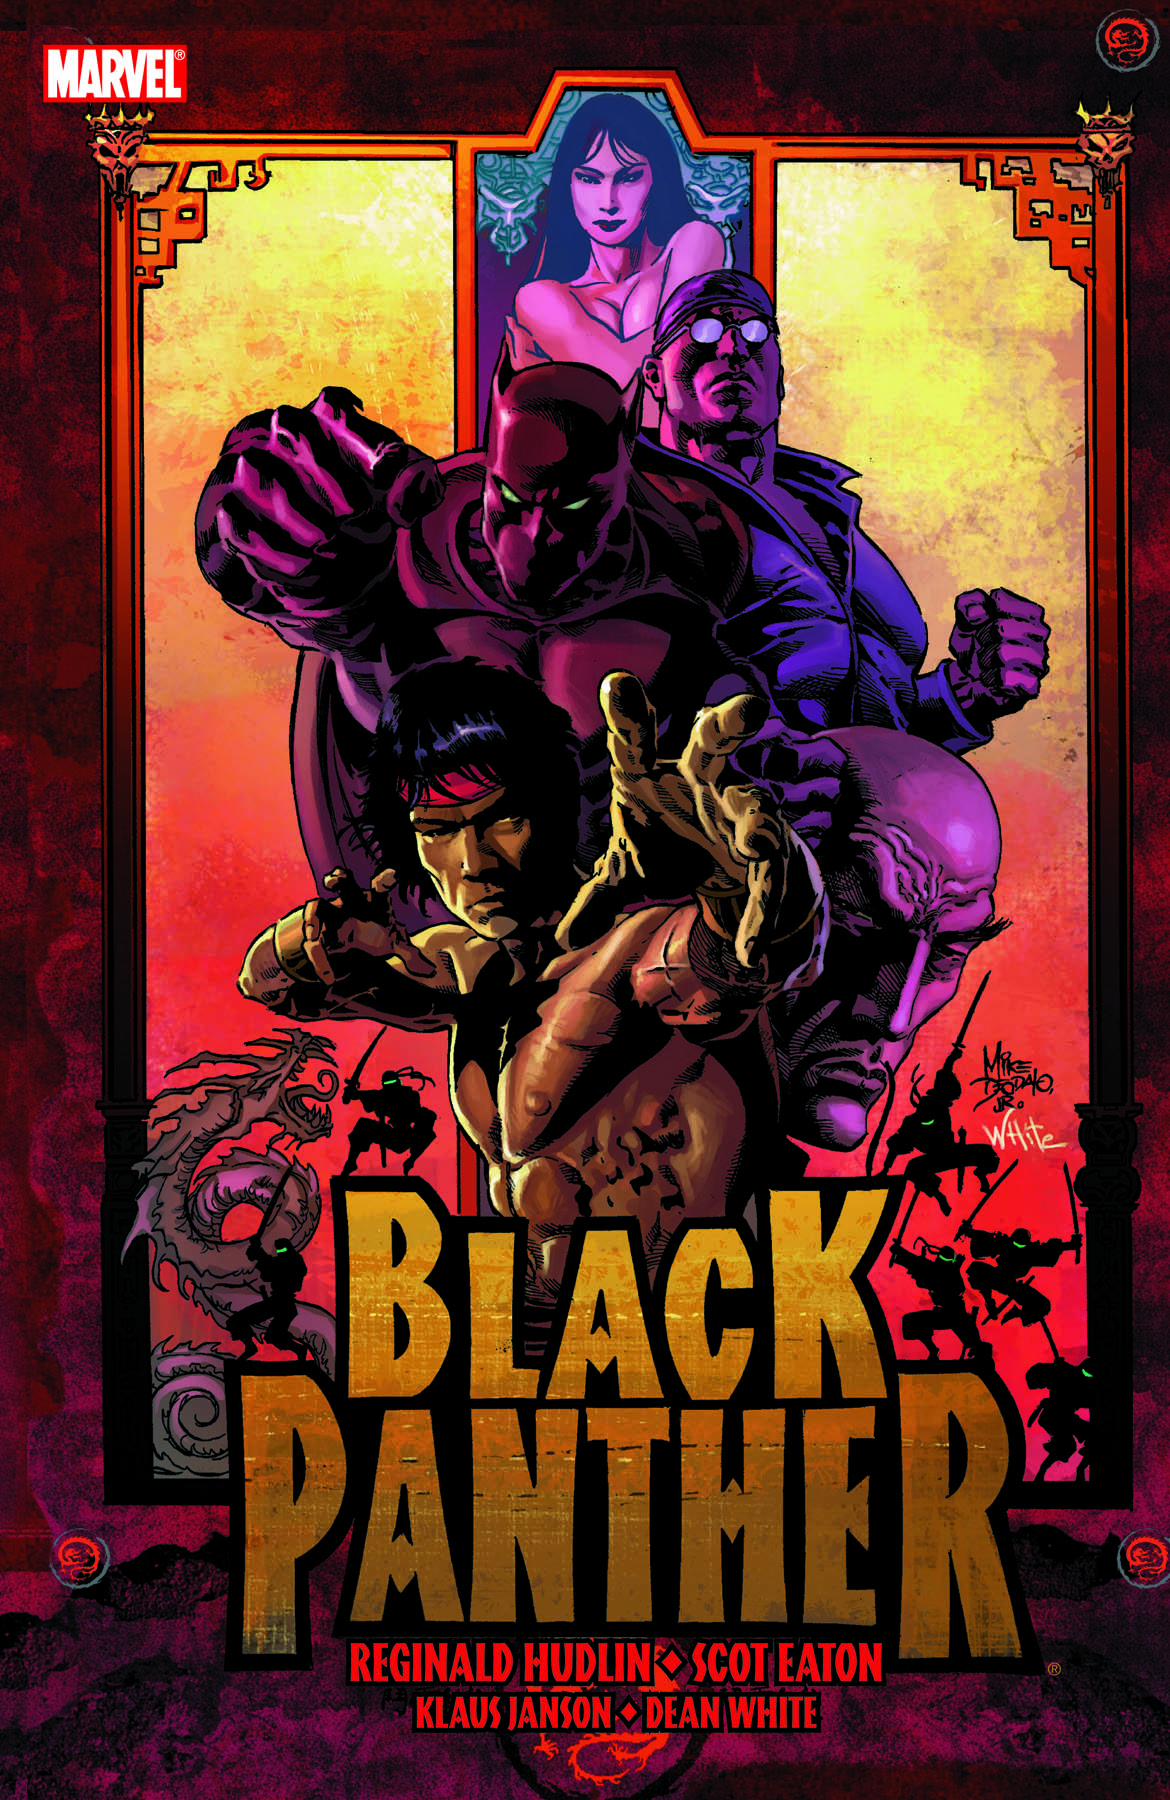 Black Panther (2005) #10